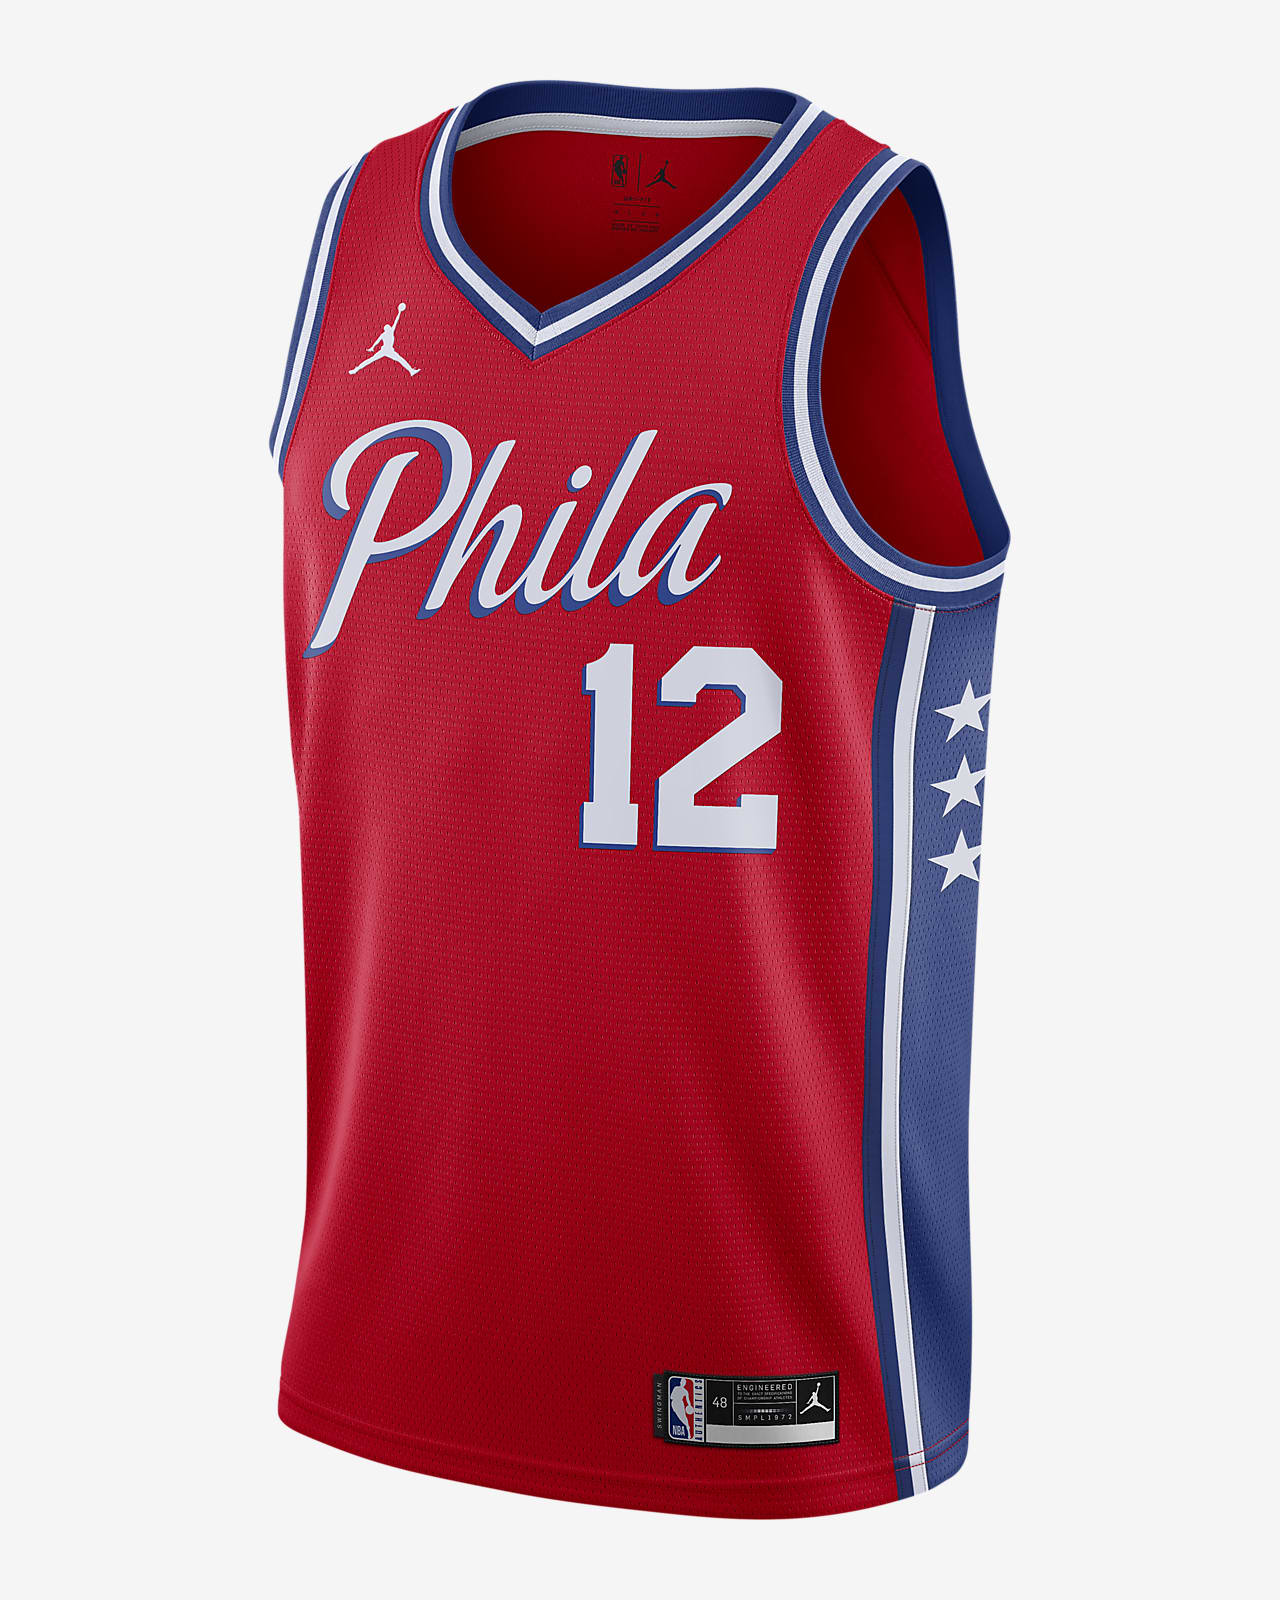 76Ers Jersey : Philadelphia 76ers unveil Classic Edition uniform for ...